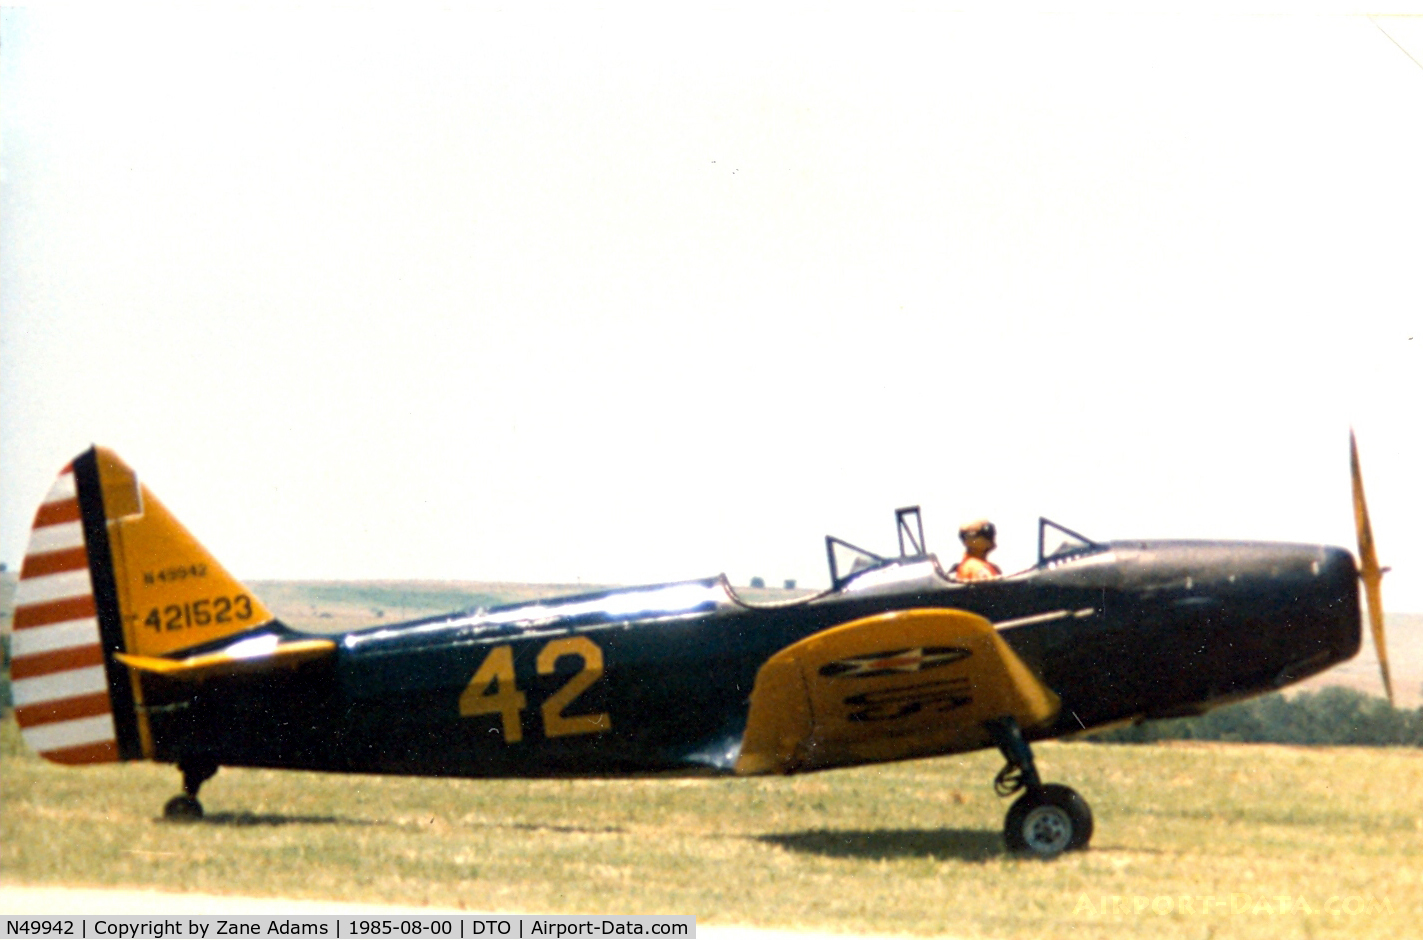 N49942, Fairchild PT-19 C/N T421523, At Denton CAF show